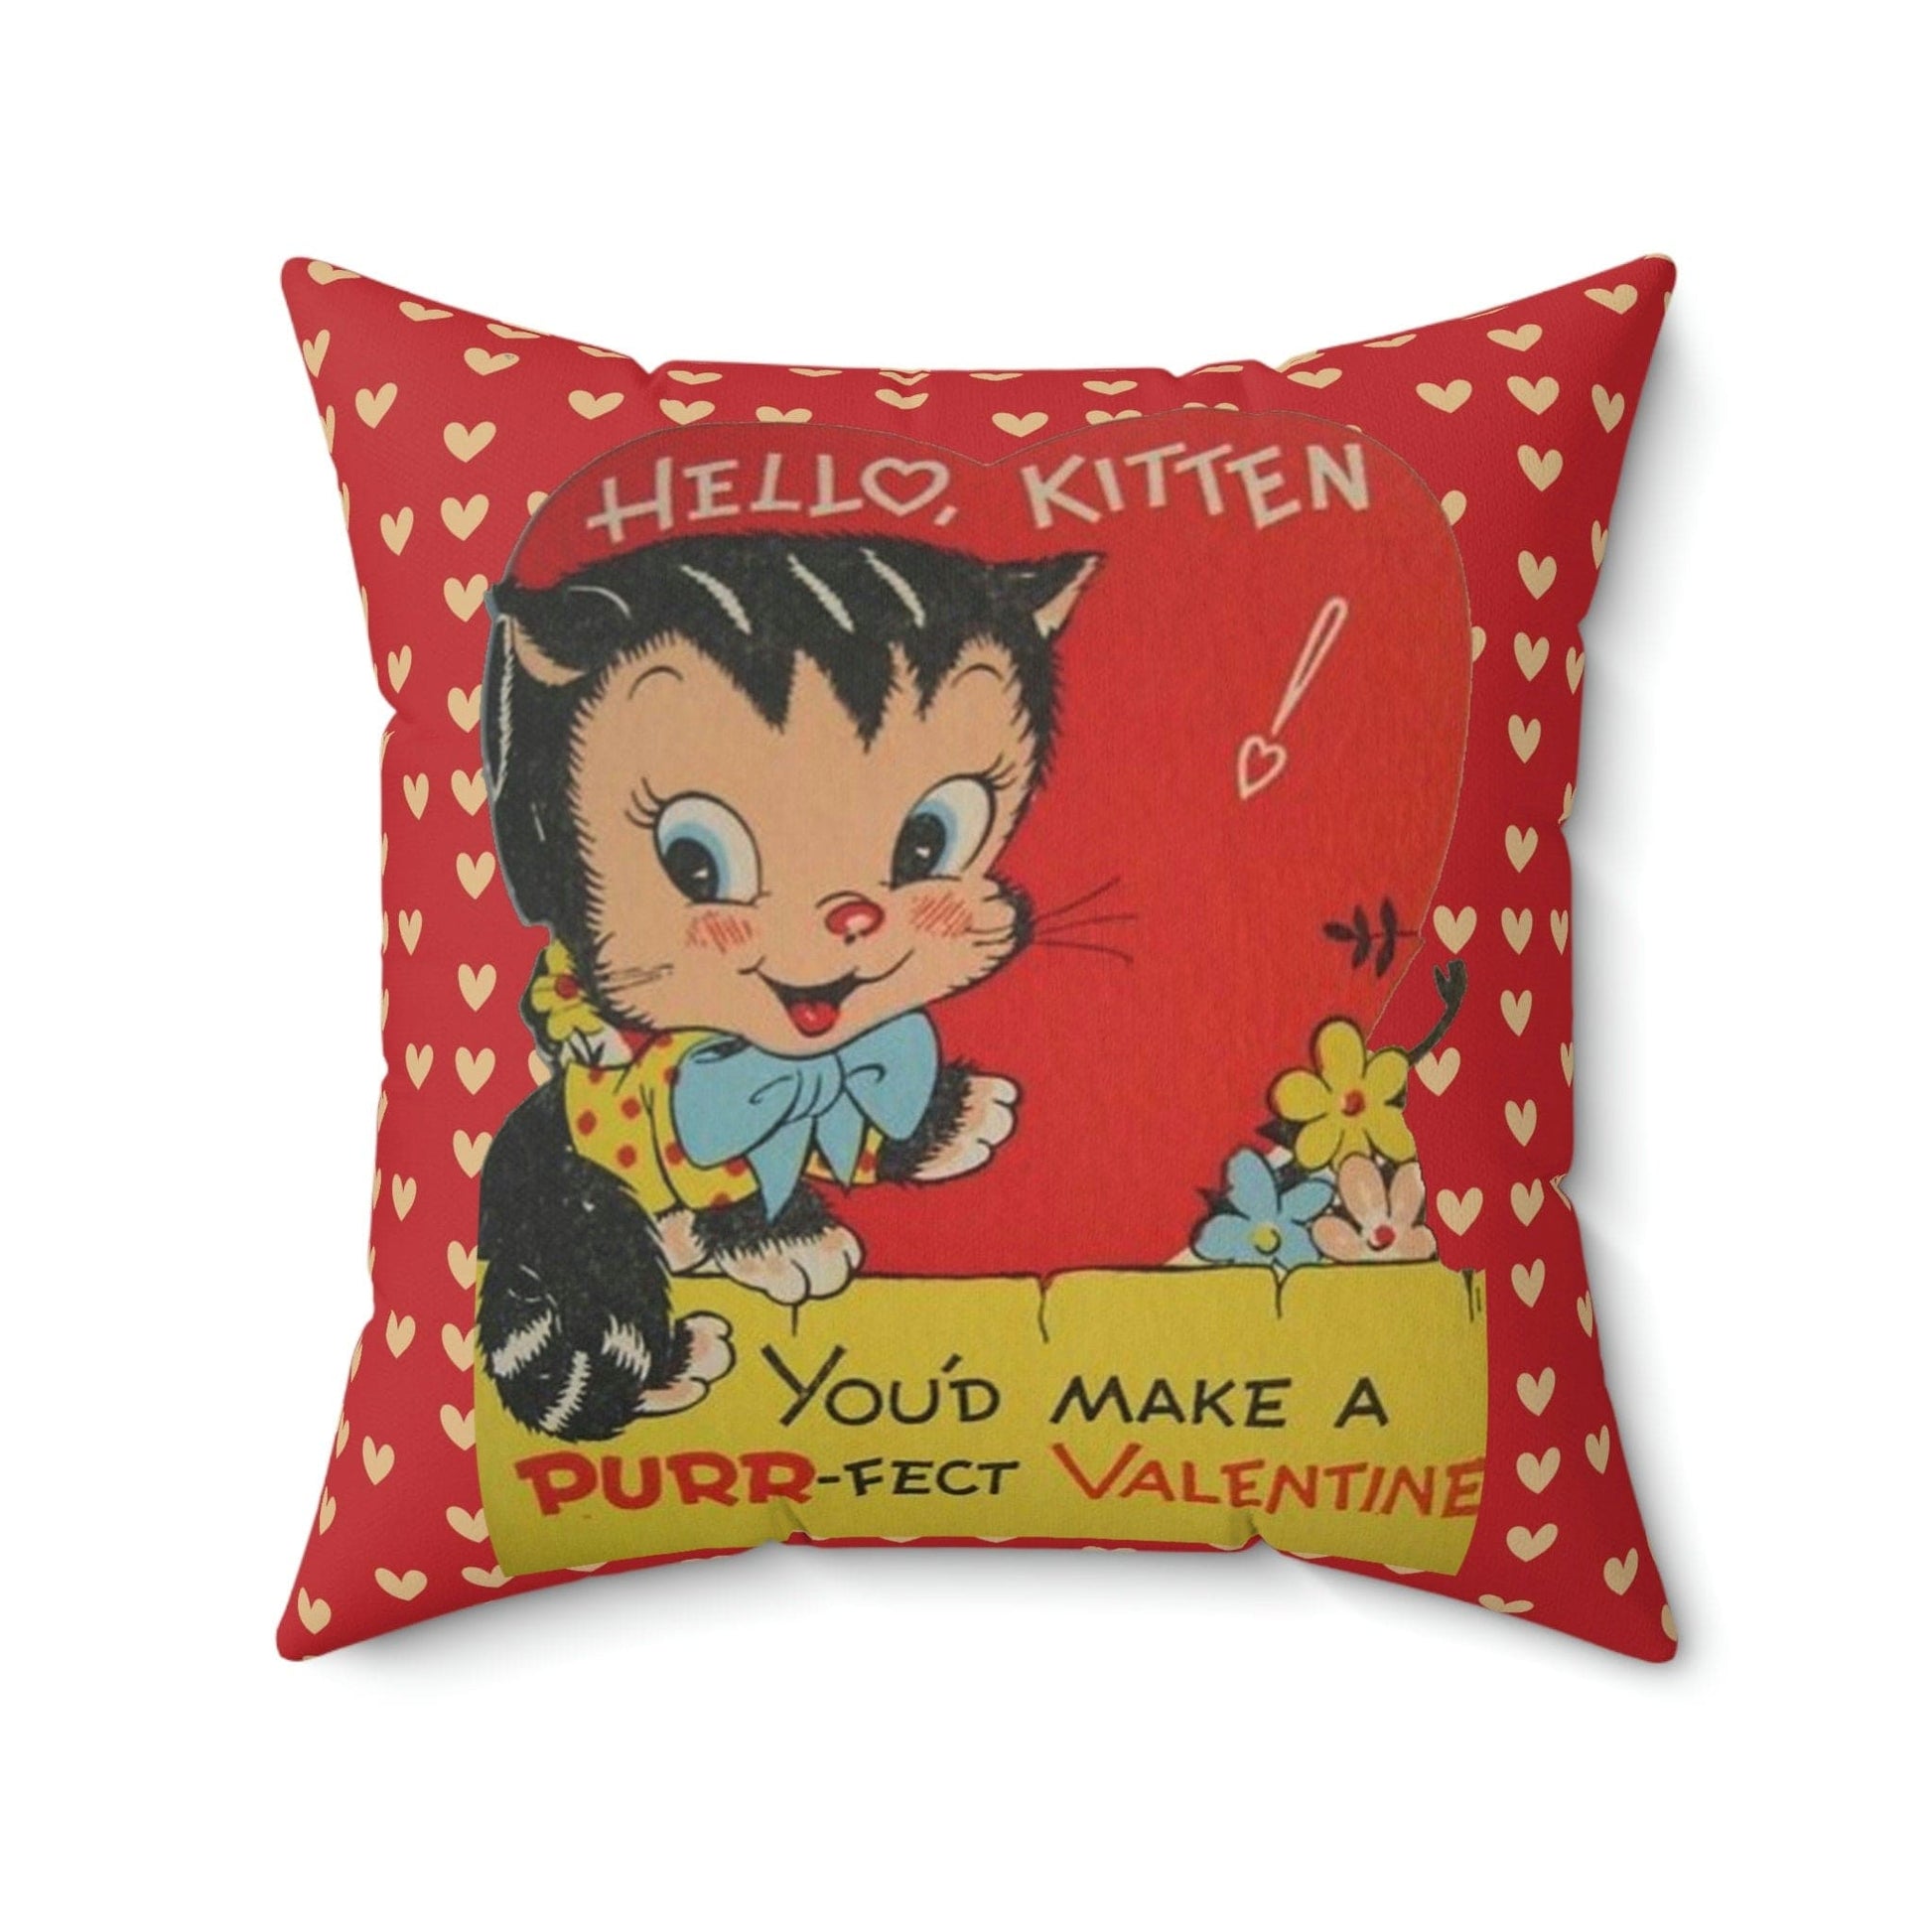 Kate McEnroe New York Vintage Retro Kitschy Kitty Valentine Throw Pillow Cover Throw Pillow Covers 20" × 20" 21634413851374215600